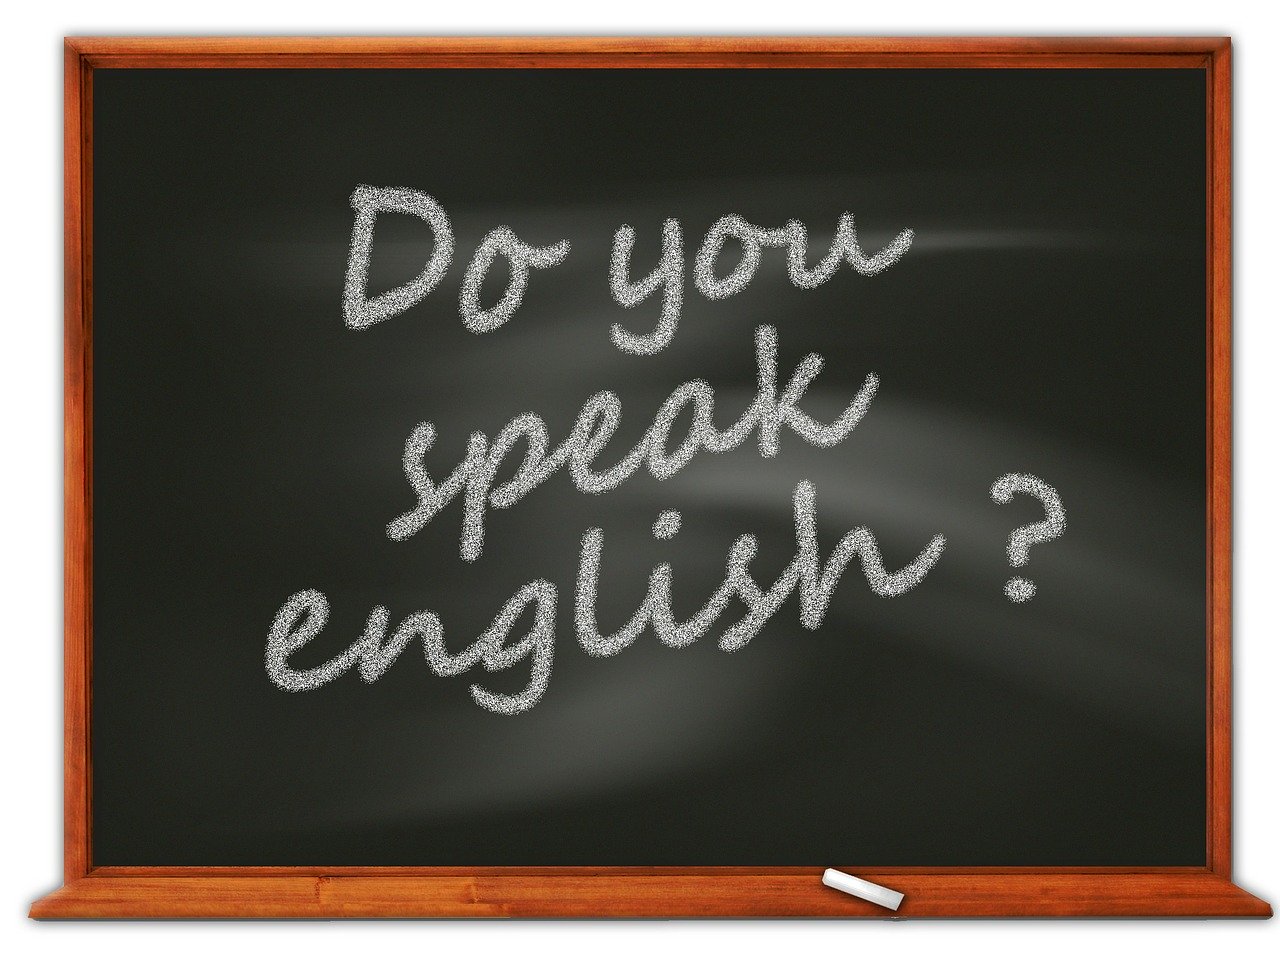 Como saber o seu nível de inglês?